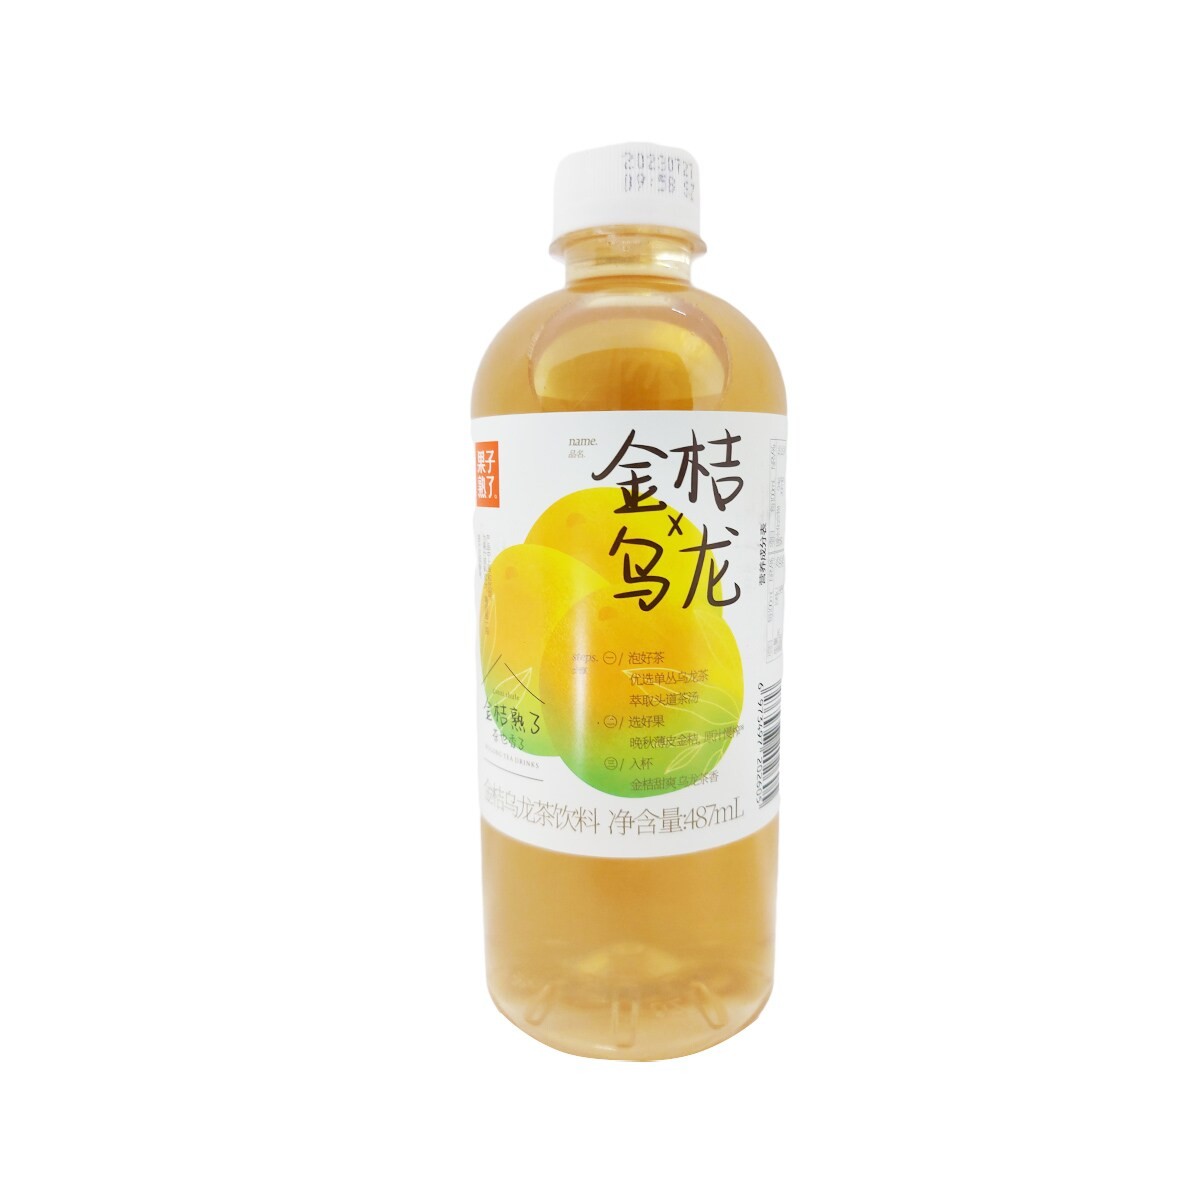 oolong-tea-drink-kumquat-flavor